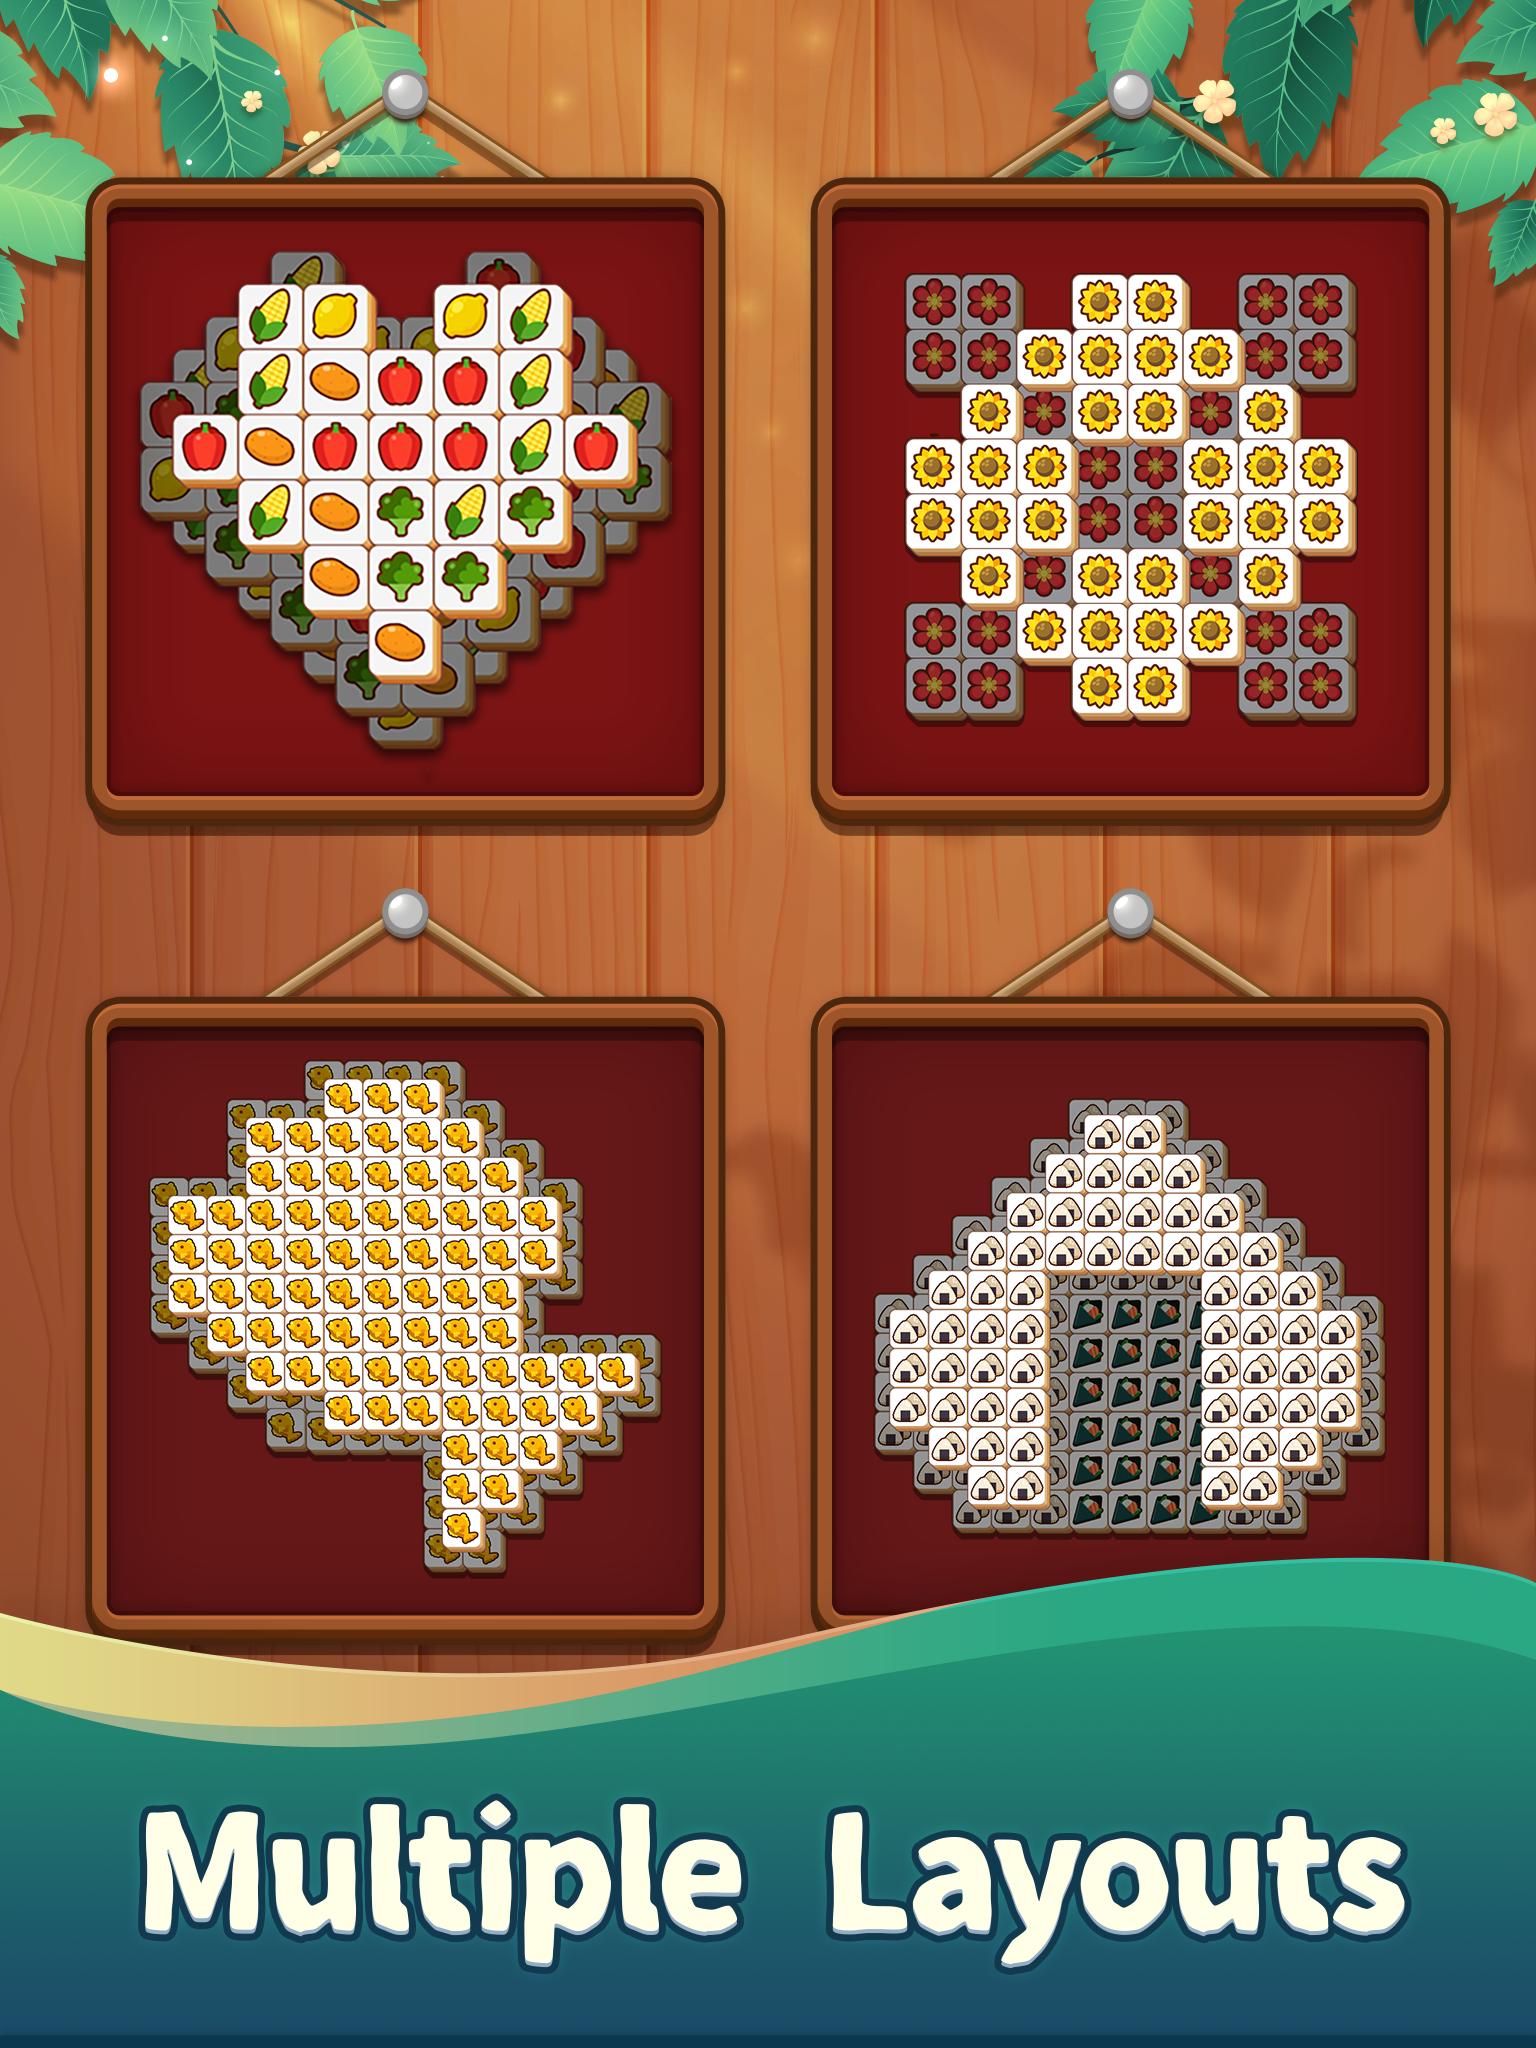 Tile matching game